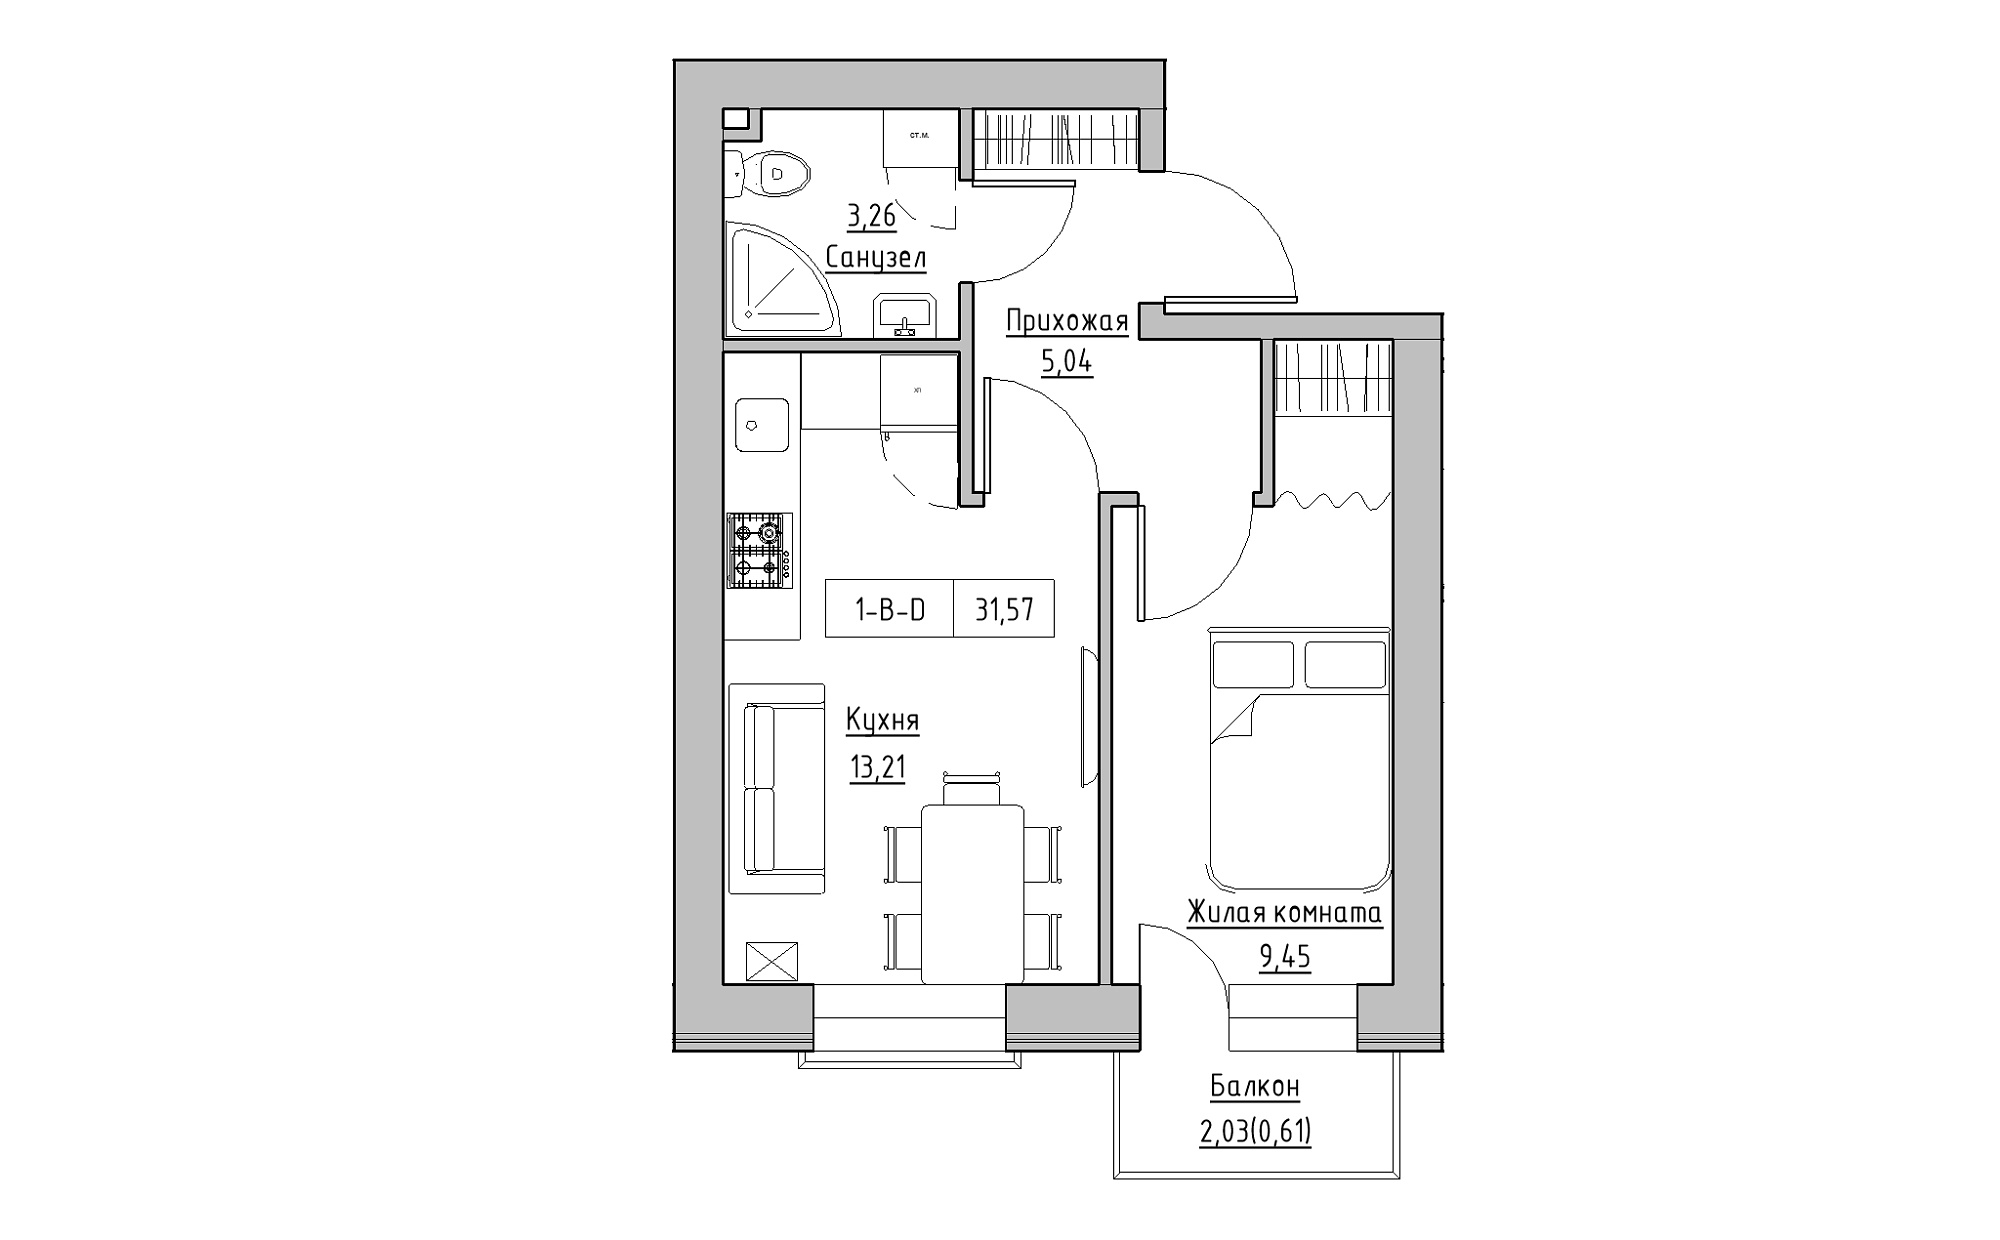 Планування 1-к квартира площею 31.57м2, KS-022-04/0003.